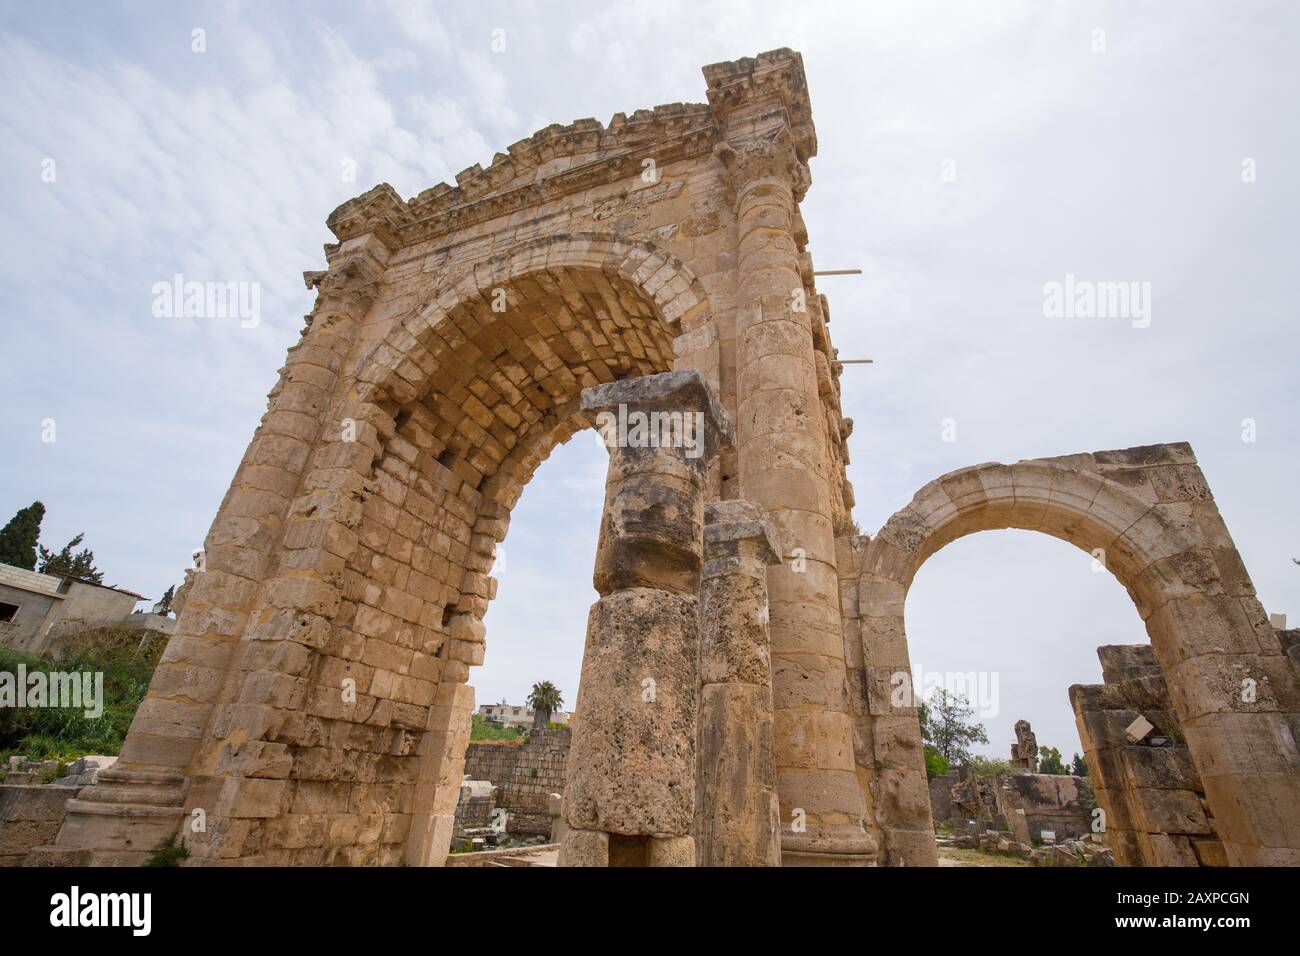 L'arche du triomphe. Vestiges romains dans Tyr. Pneu est une ancienne ville phénicienne. Pneu, Liban - Juin 2019 Banque D'Images